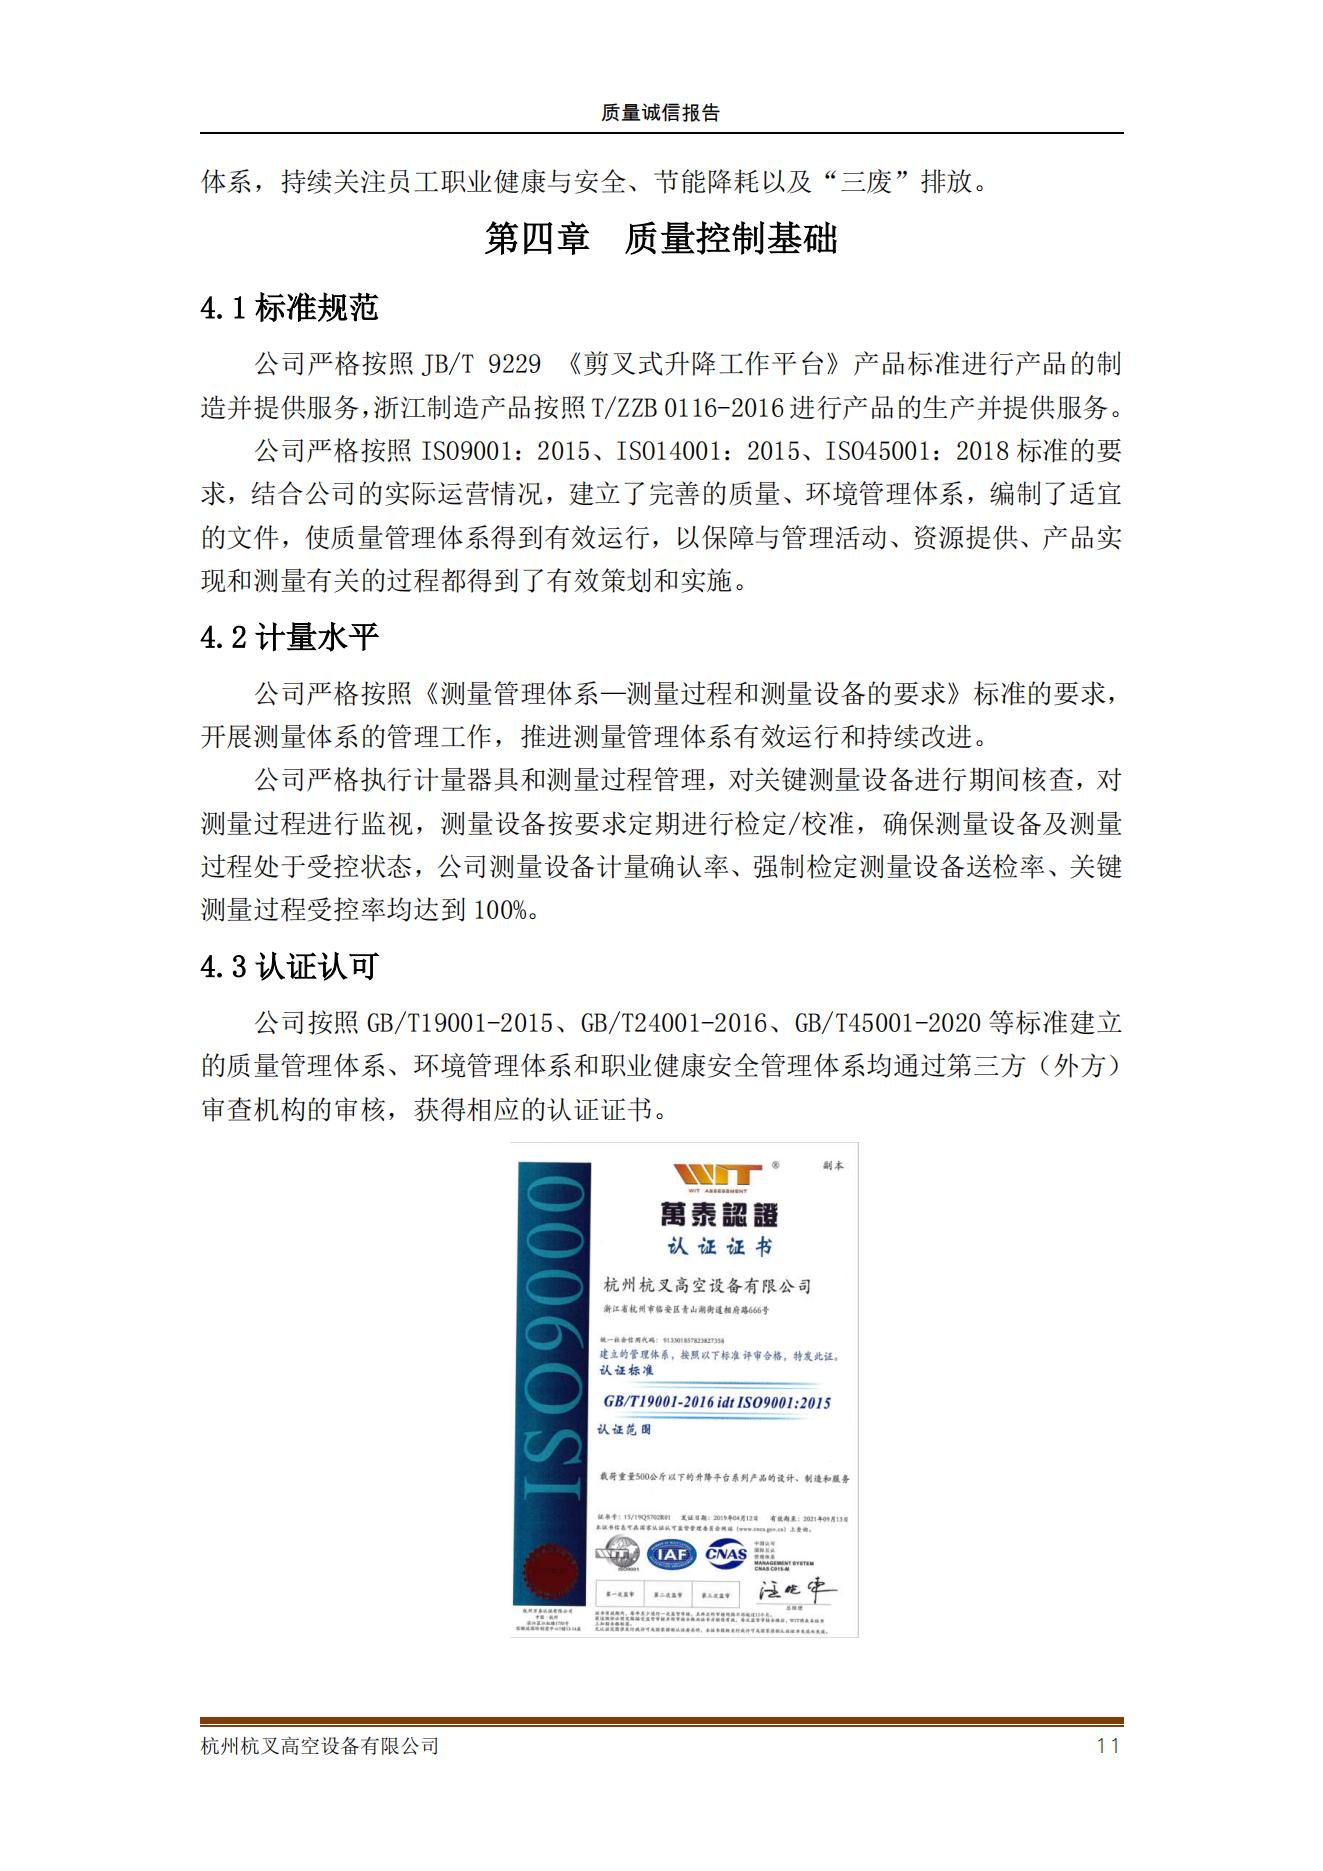 杭州杭叉高空设备公司2021年质量诚信报告(图11)